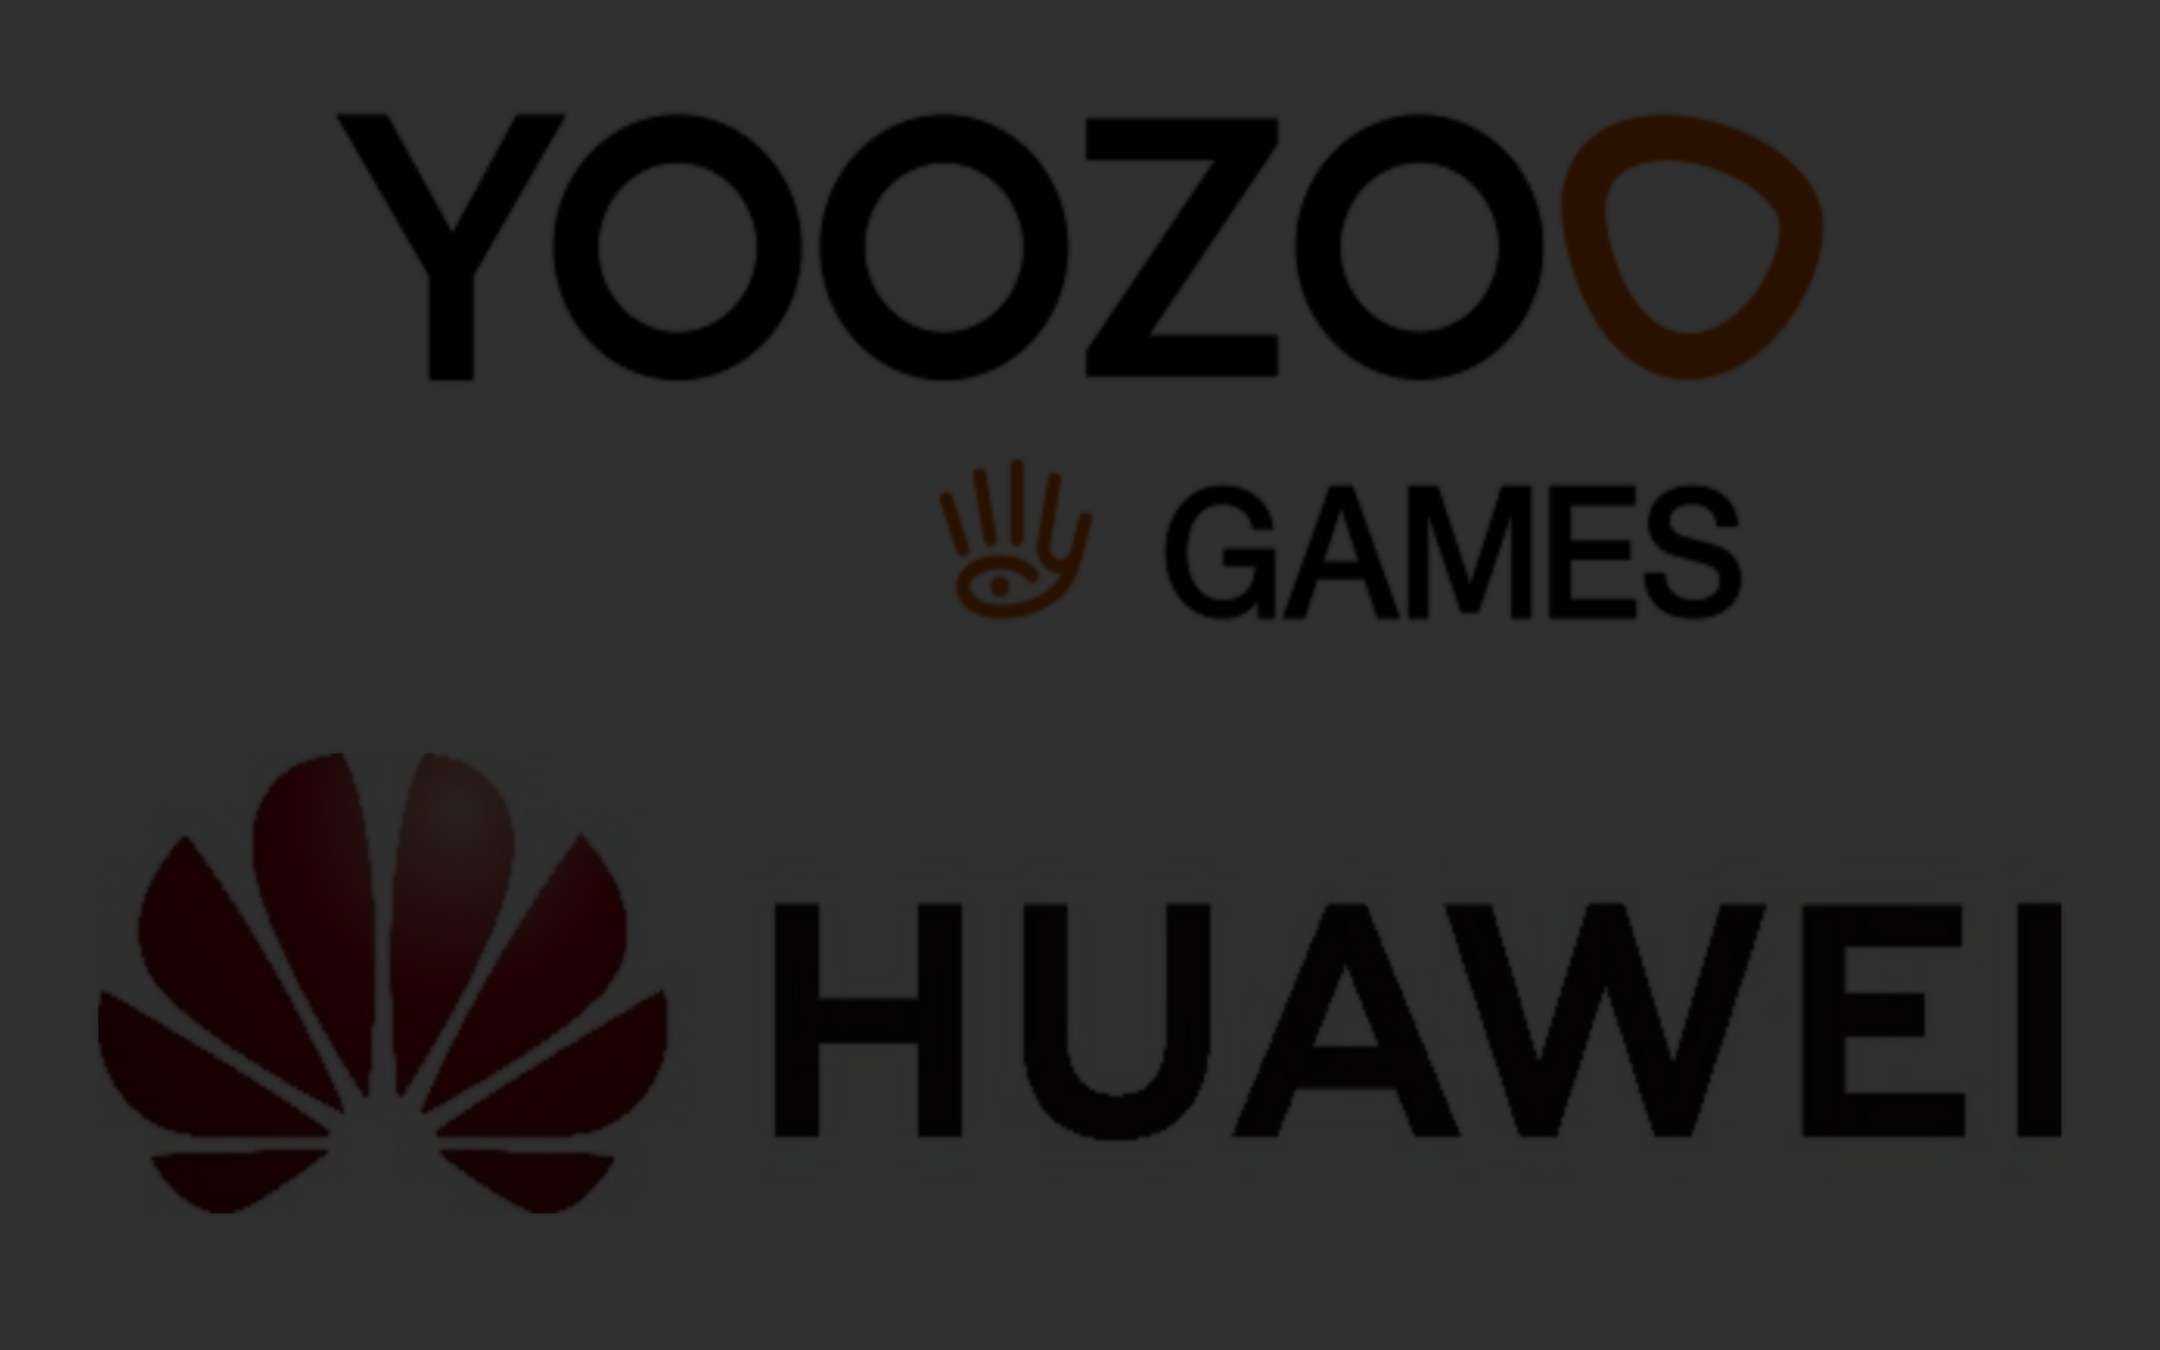 Huawei e Yoozoo Games: la notizia che aspettavamo